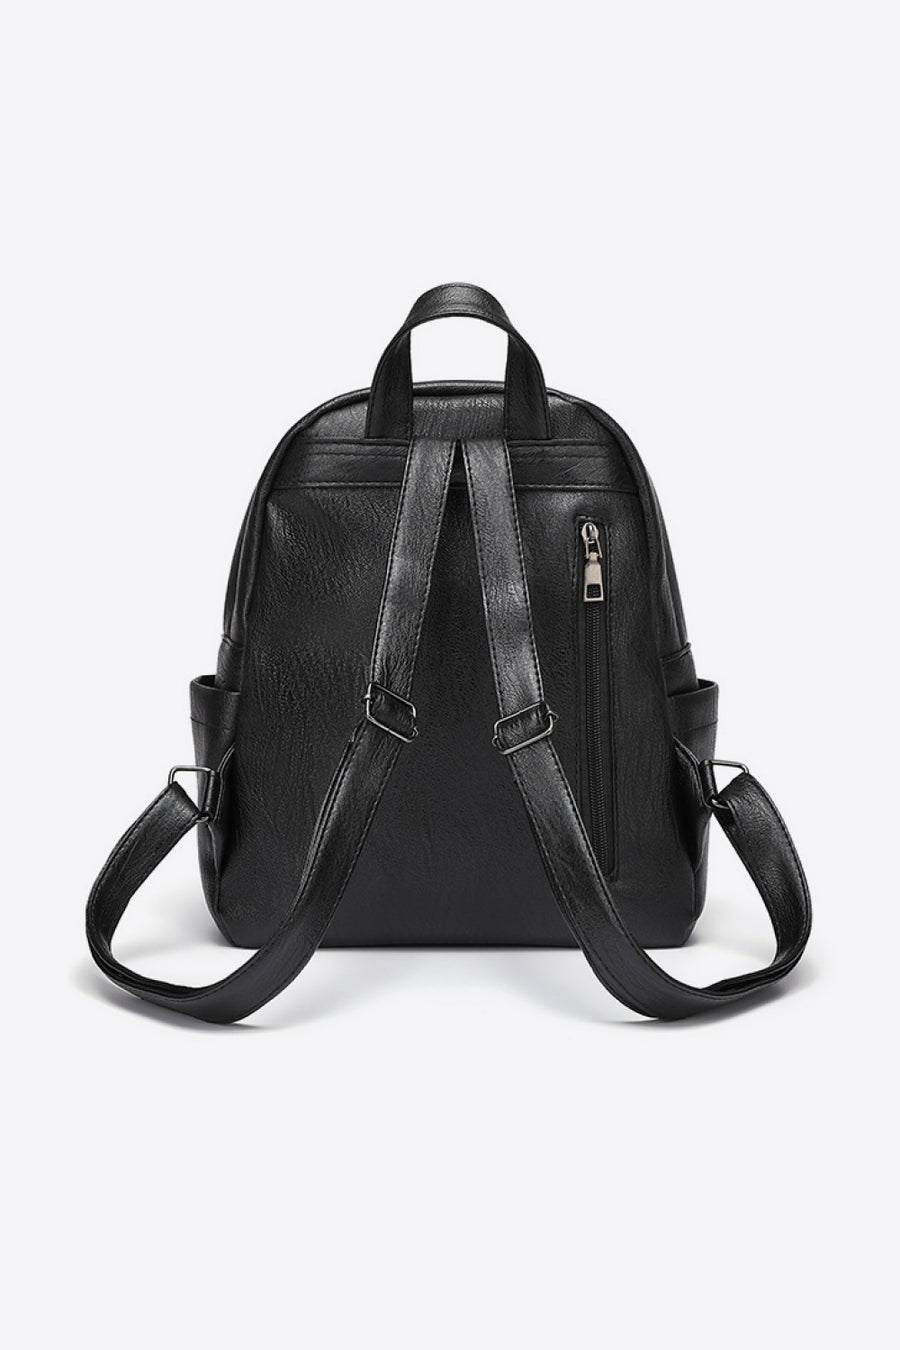 Baeful PU Leather Backpack